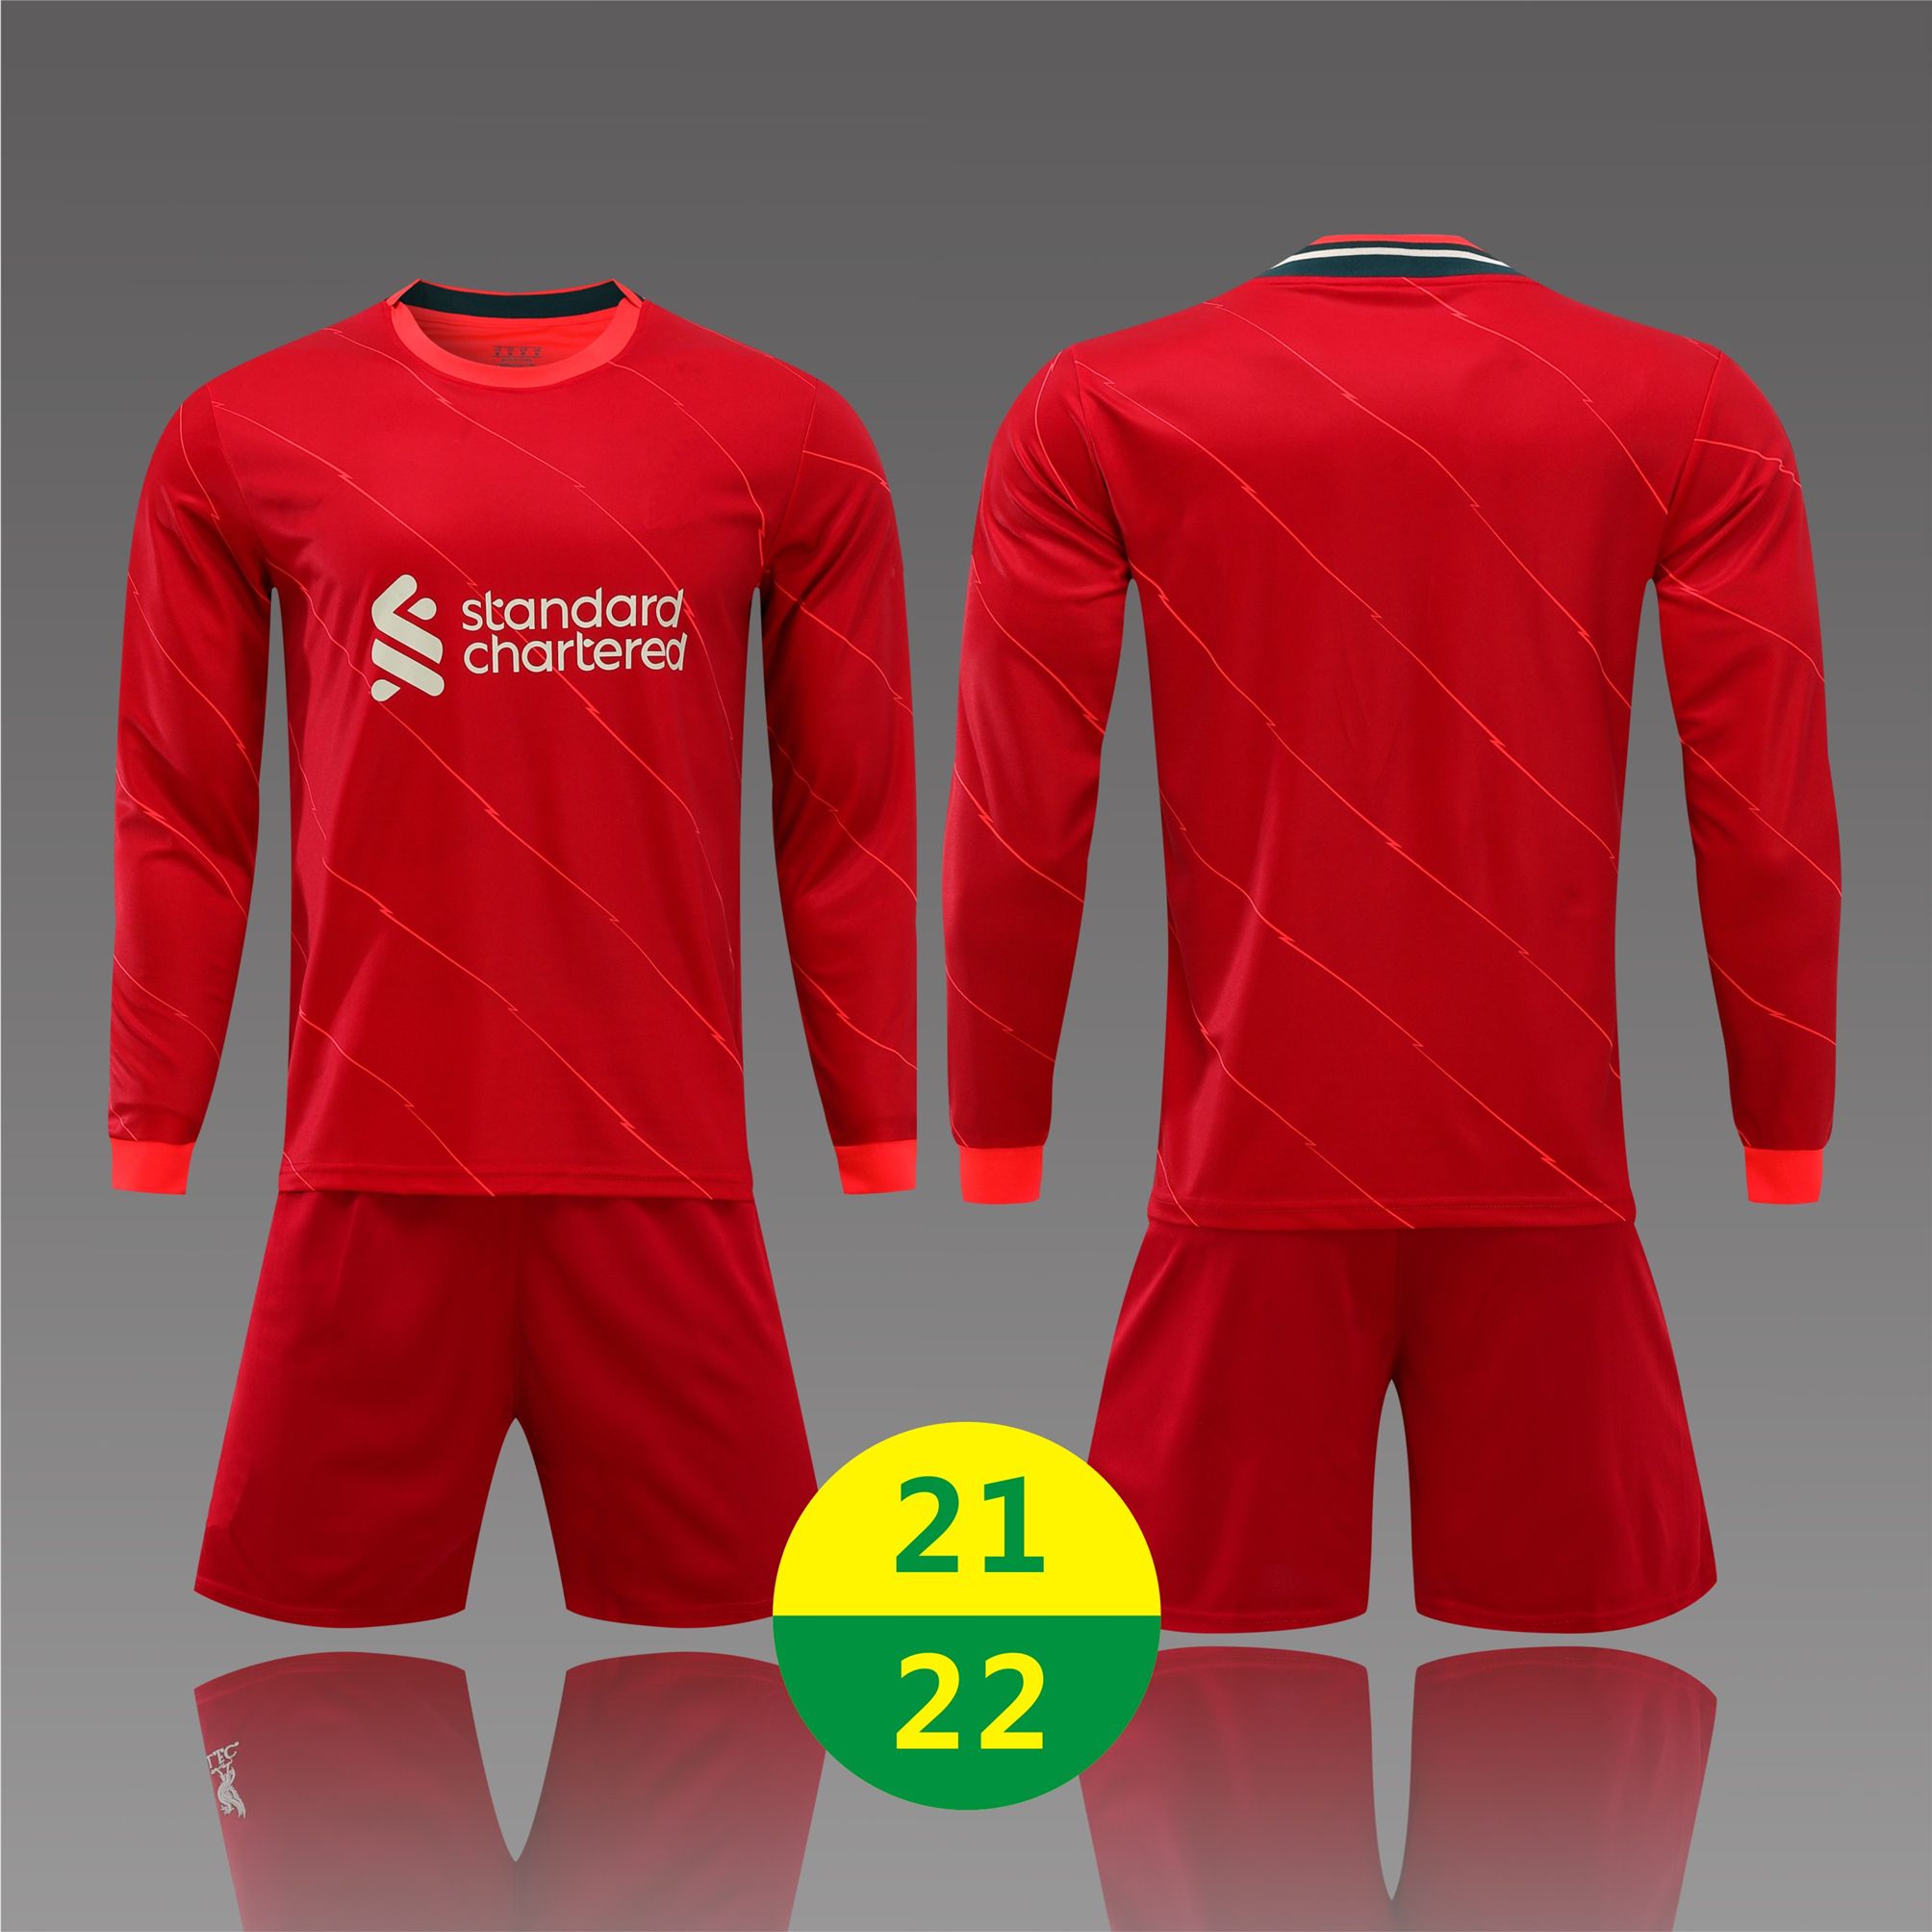 US FAST 2021 Hem Jersey Fotbollsuppsättningar Långärmad kostym Jerseys Män Kvinnor Ungdomsfotboll Skjortor TRACKSUITS 21 22 Vuxenutbildning T Shirt Kit 2022 med logo # LWPZ-21A1